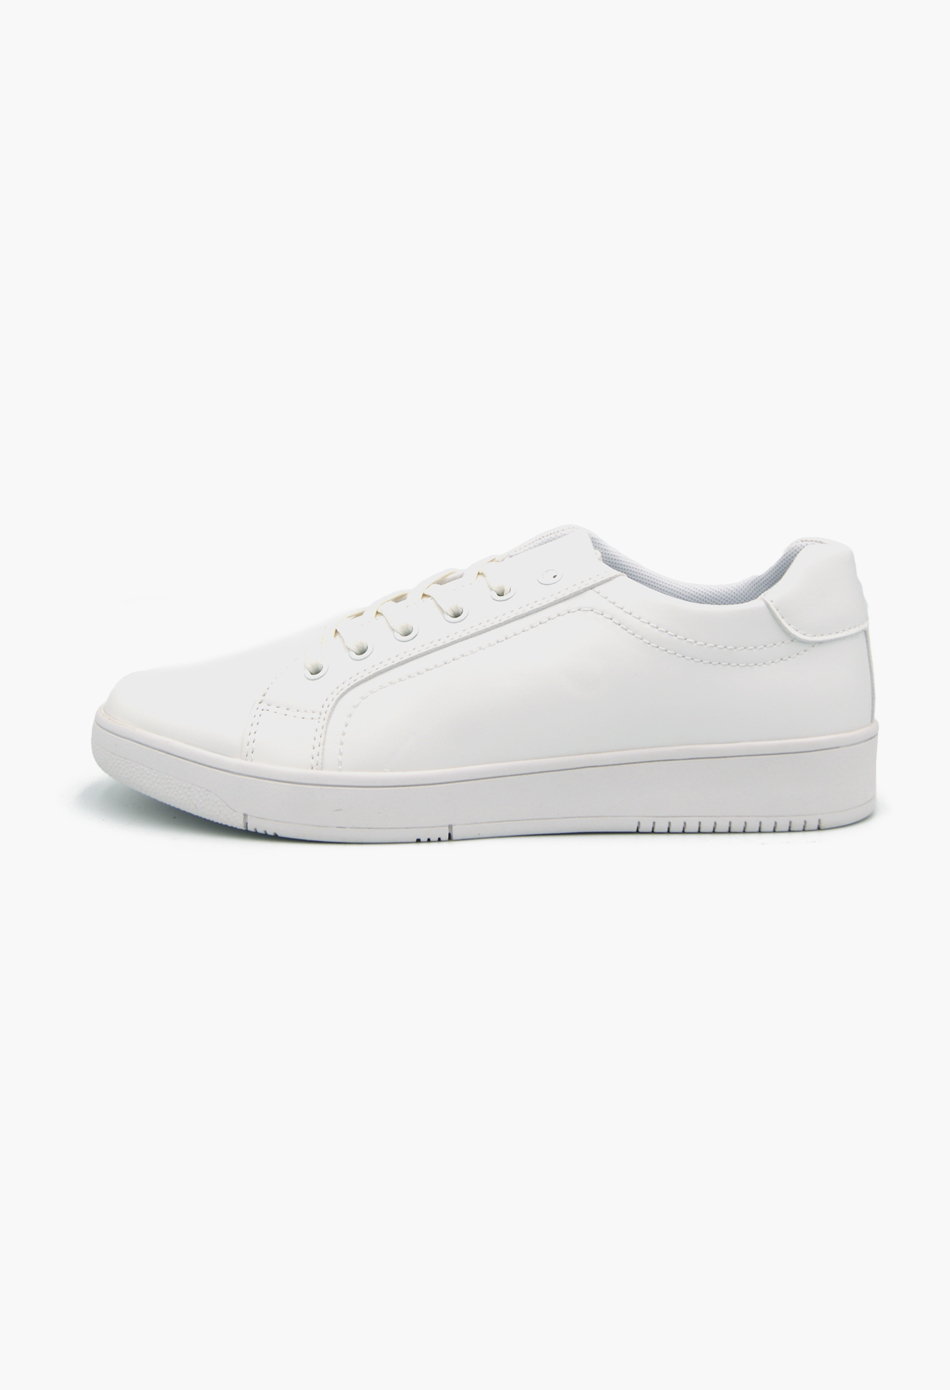 Ανδρικά Casual Sneakers Λευκό / L22210-white ΑΘΛΗΤΙΚΑ & SNEAKERS joya.gr